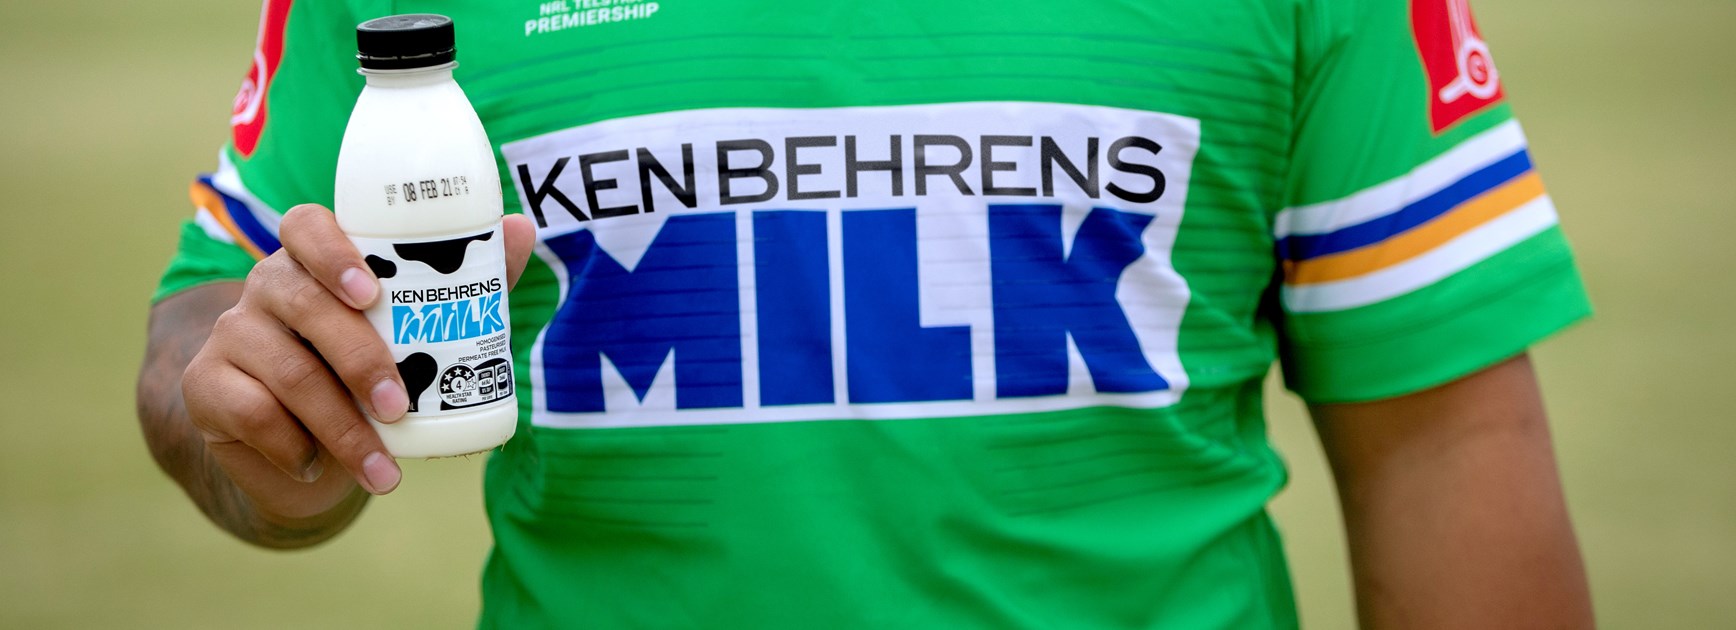 Ken Behrens Raiders and Ken Behrens Milk to support headspace Canberra